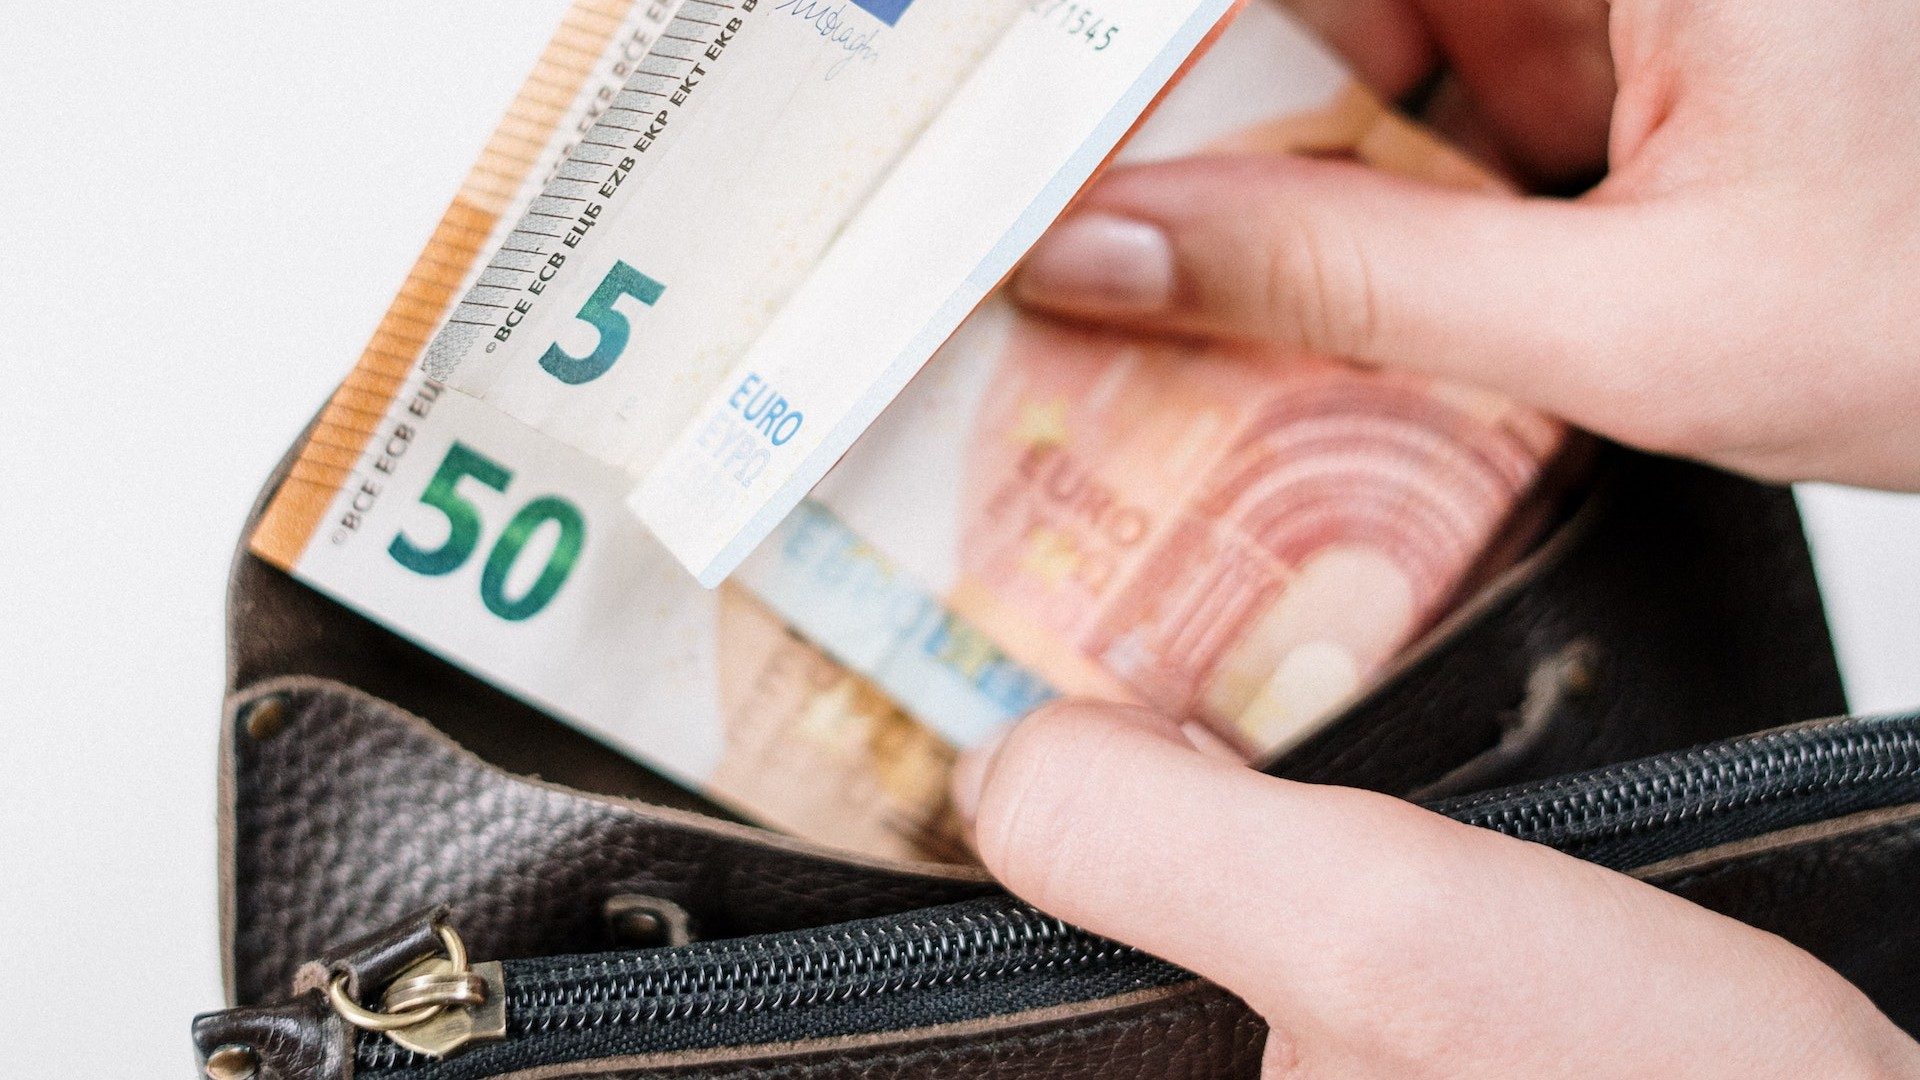 Eine Person steckt mehrere Euro-Scheine in eine Geldbörse